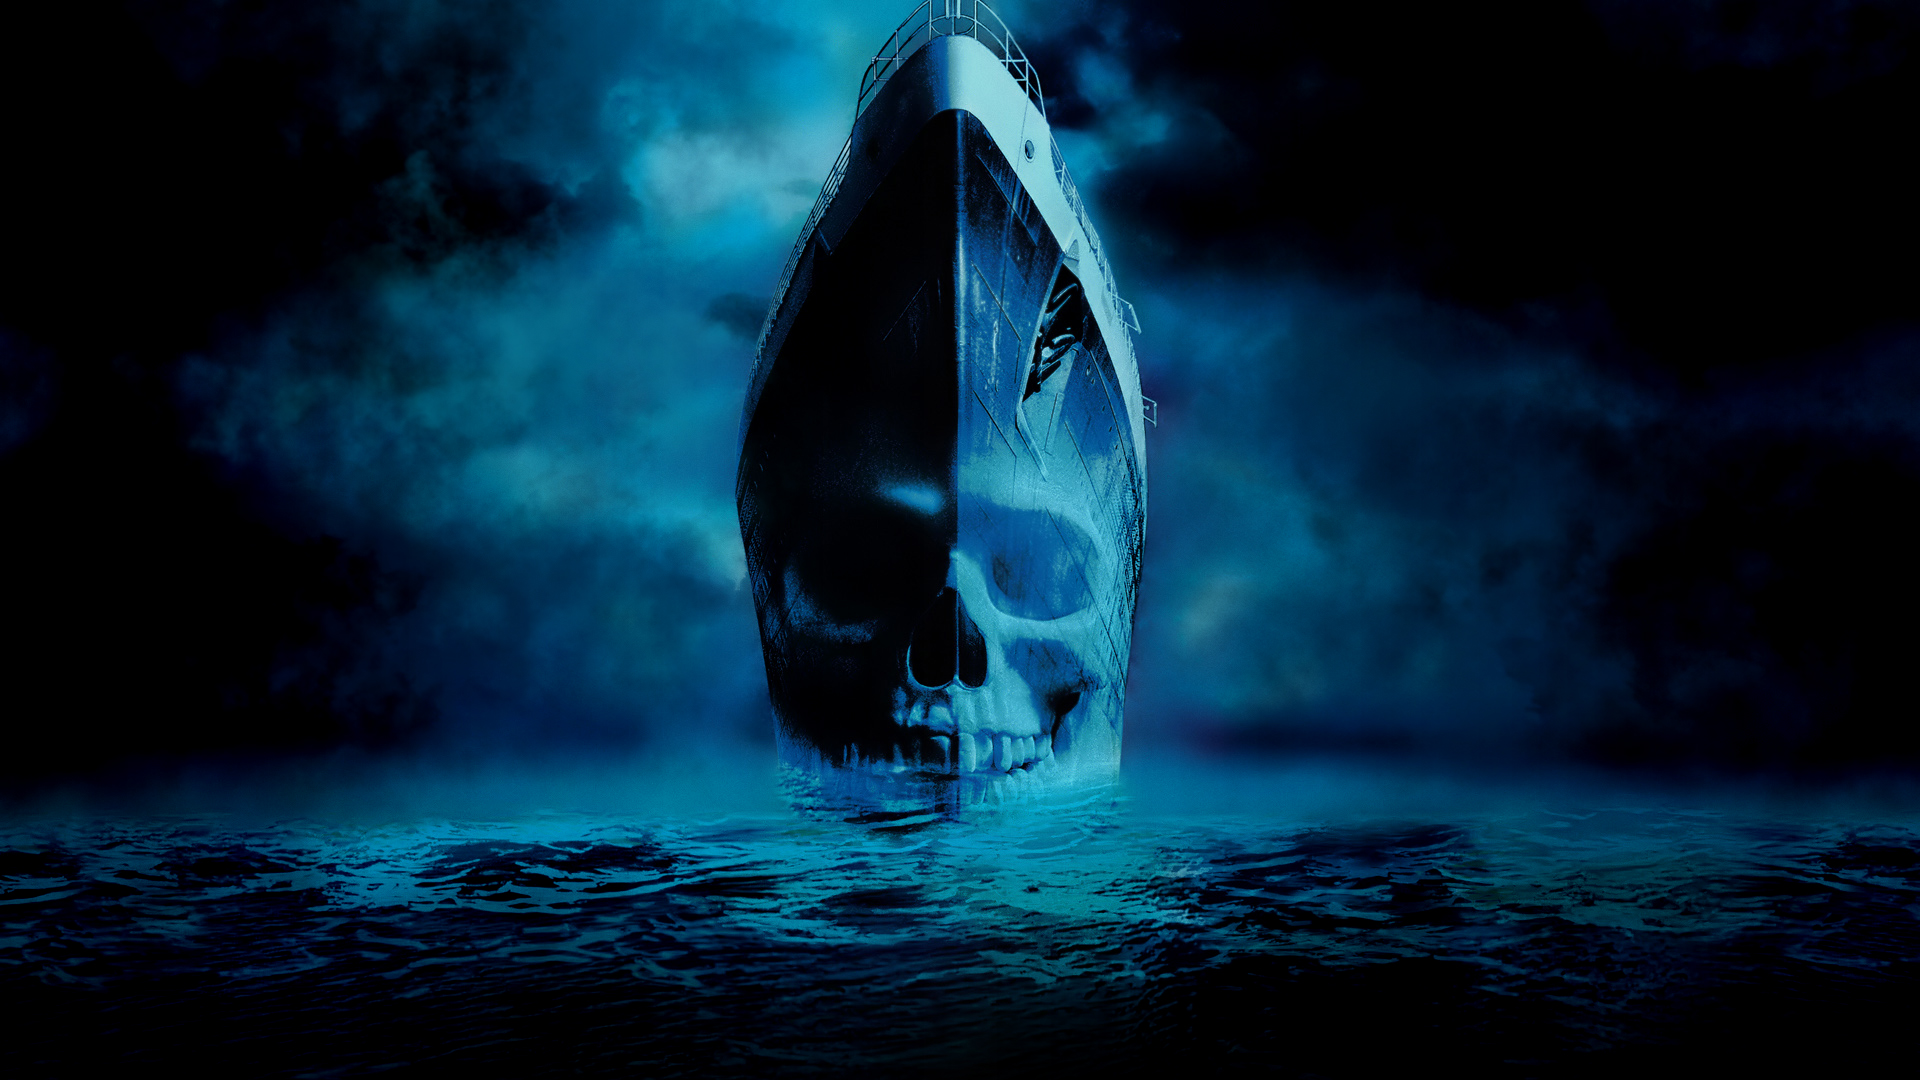 Los mejores fondos de pantalla de Ghost Ship (Barco Fantasma) para la pantalla del teléfono